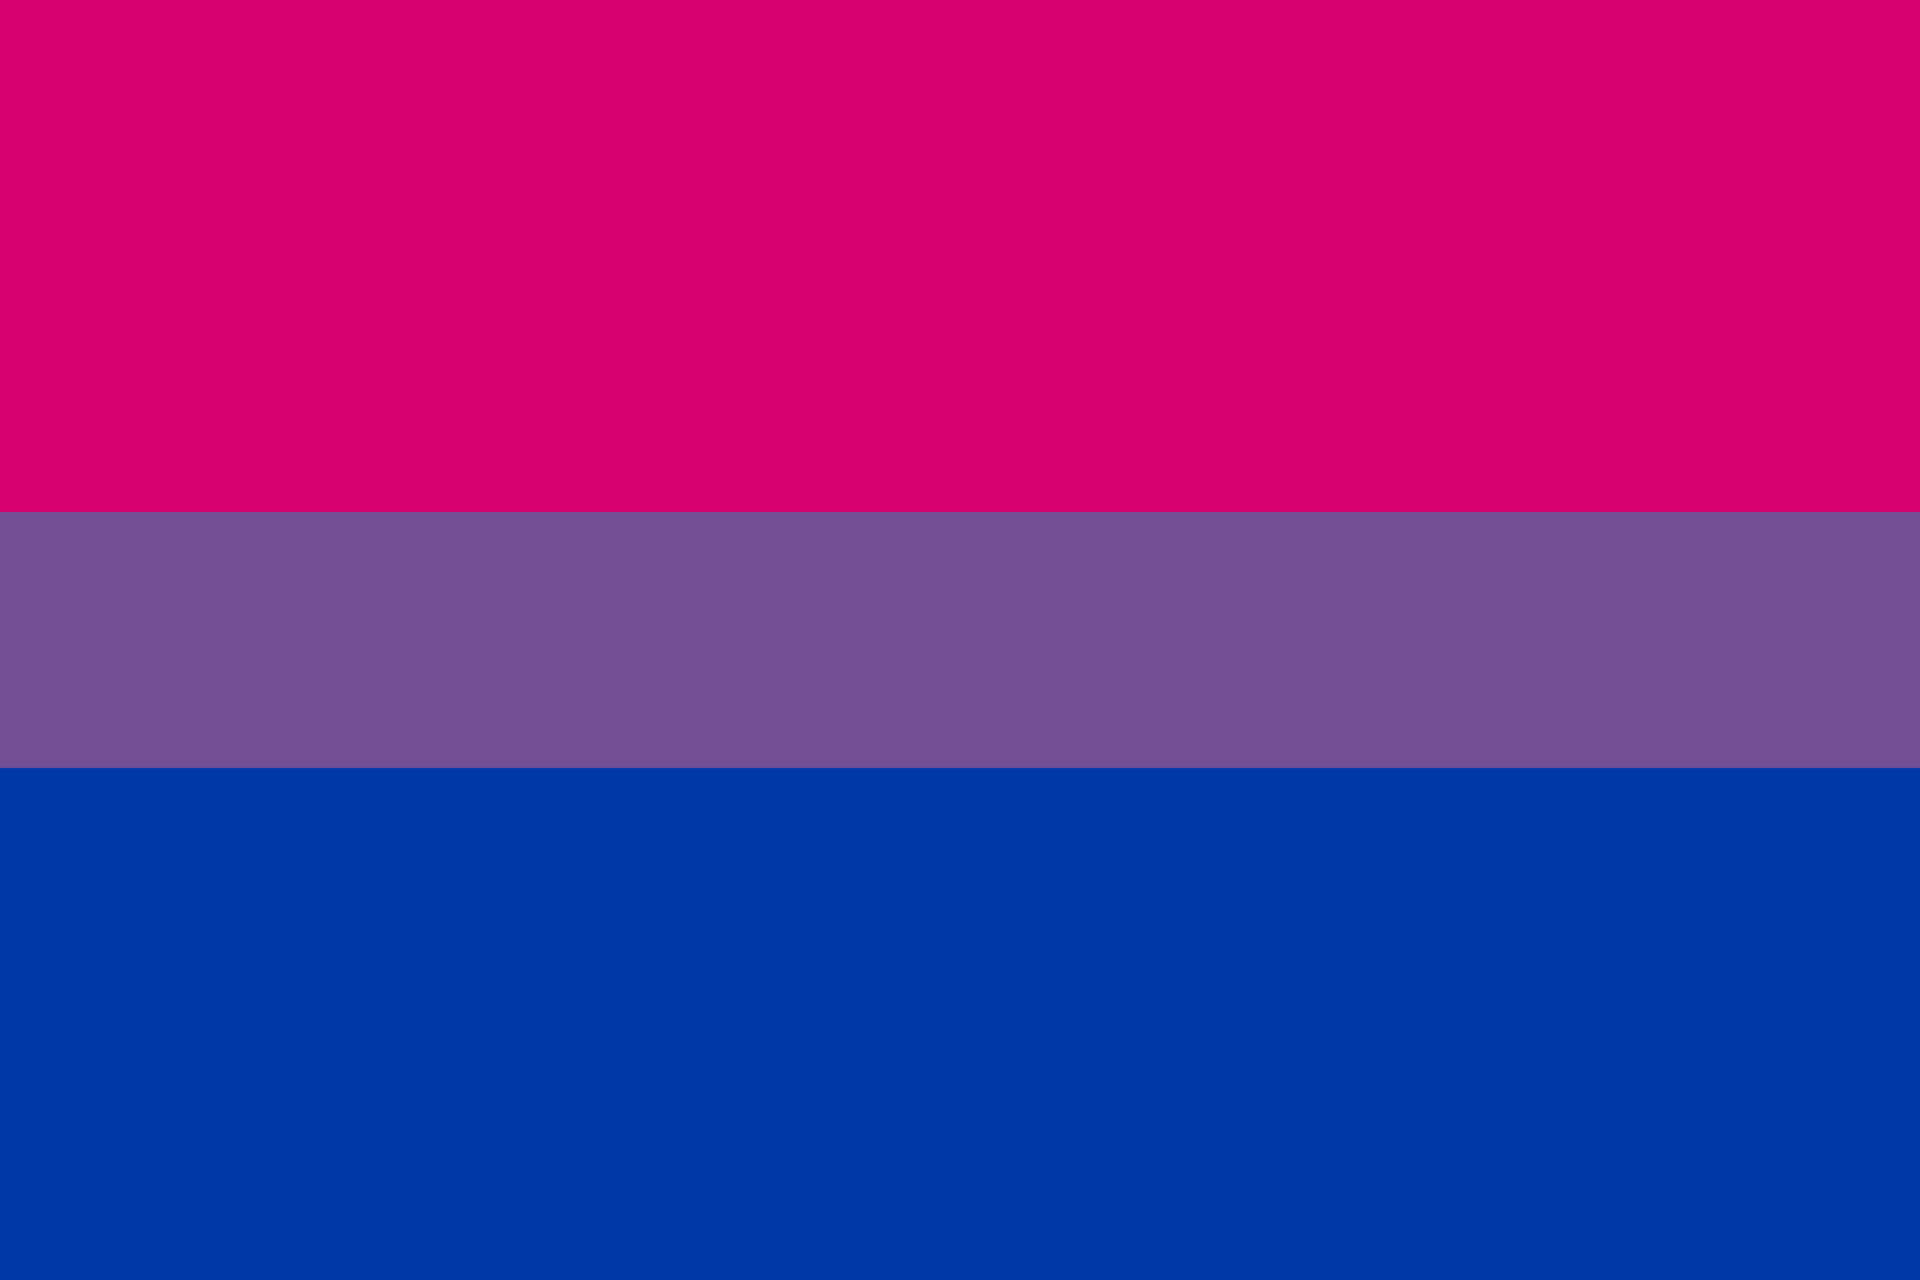 bisexual pride flag wallpaper desktop